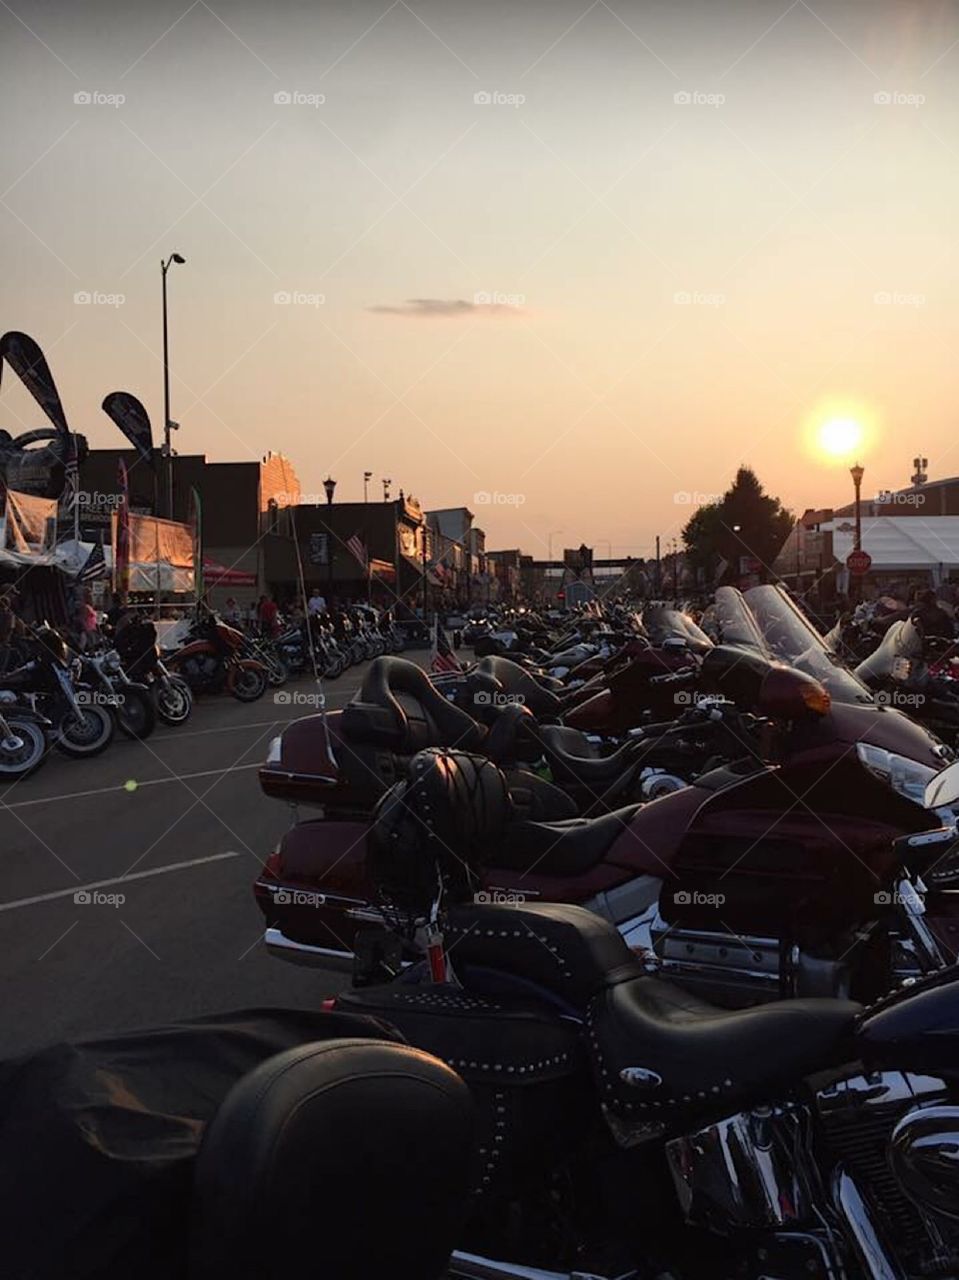 Sturgis bike week at sunset South Dakota 